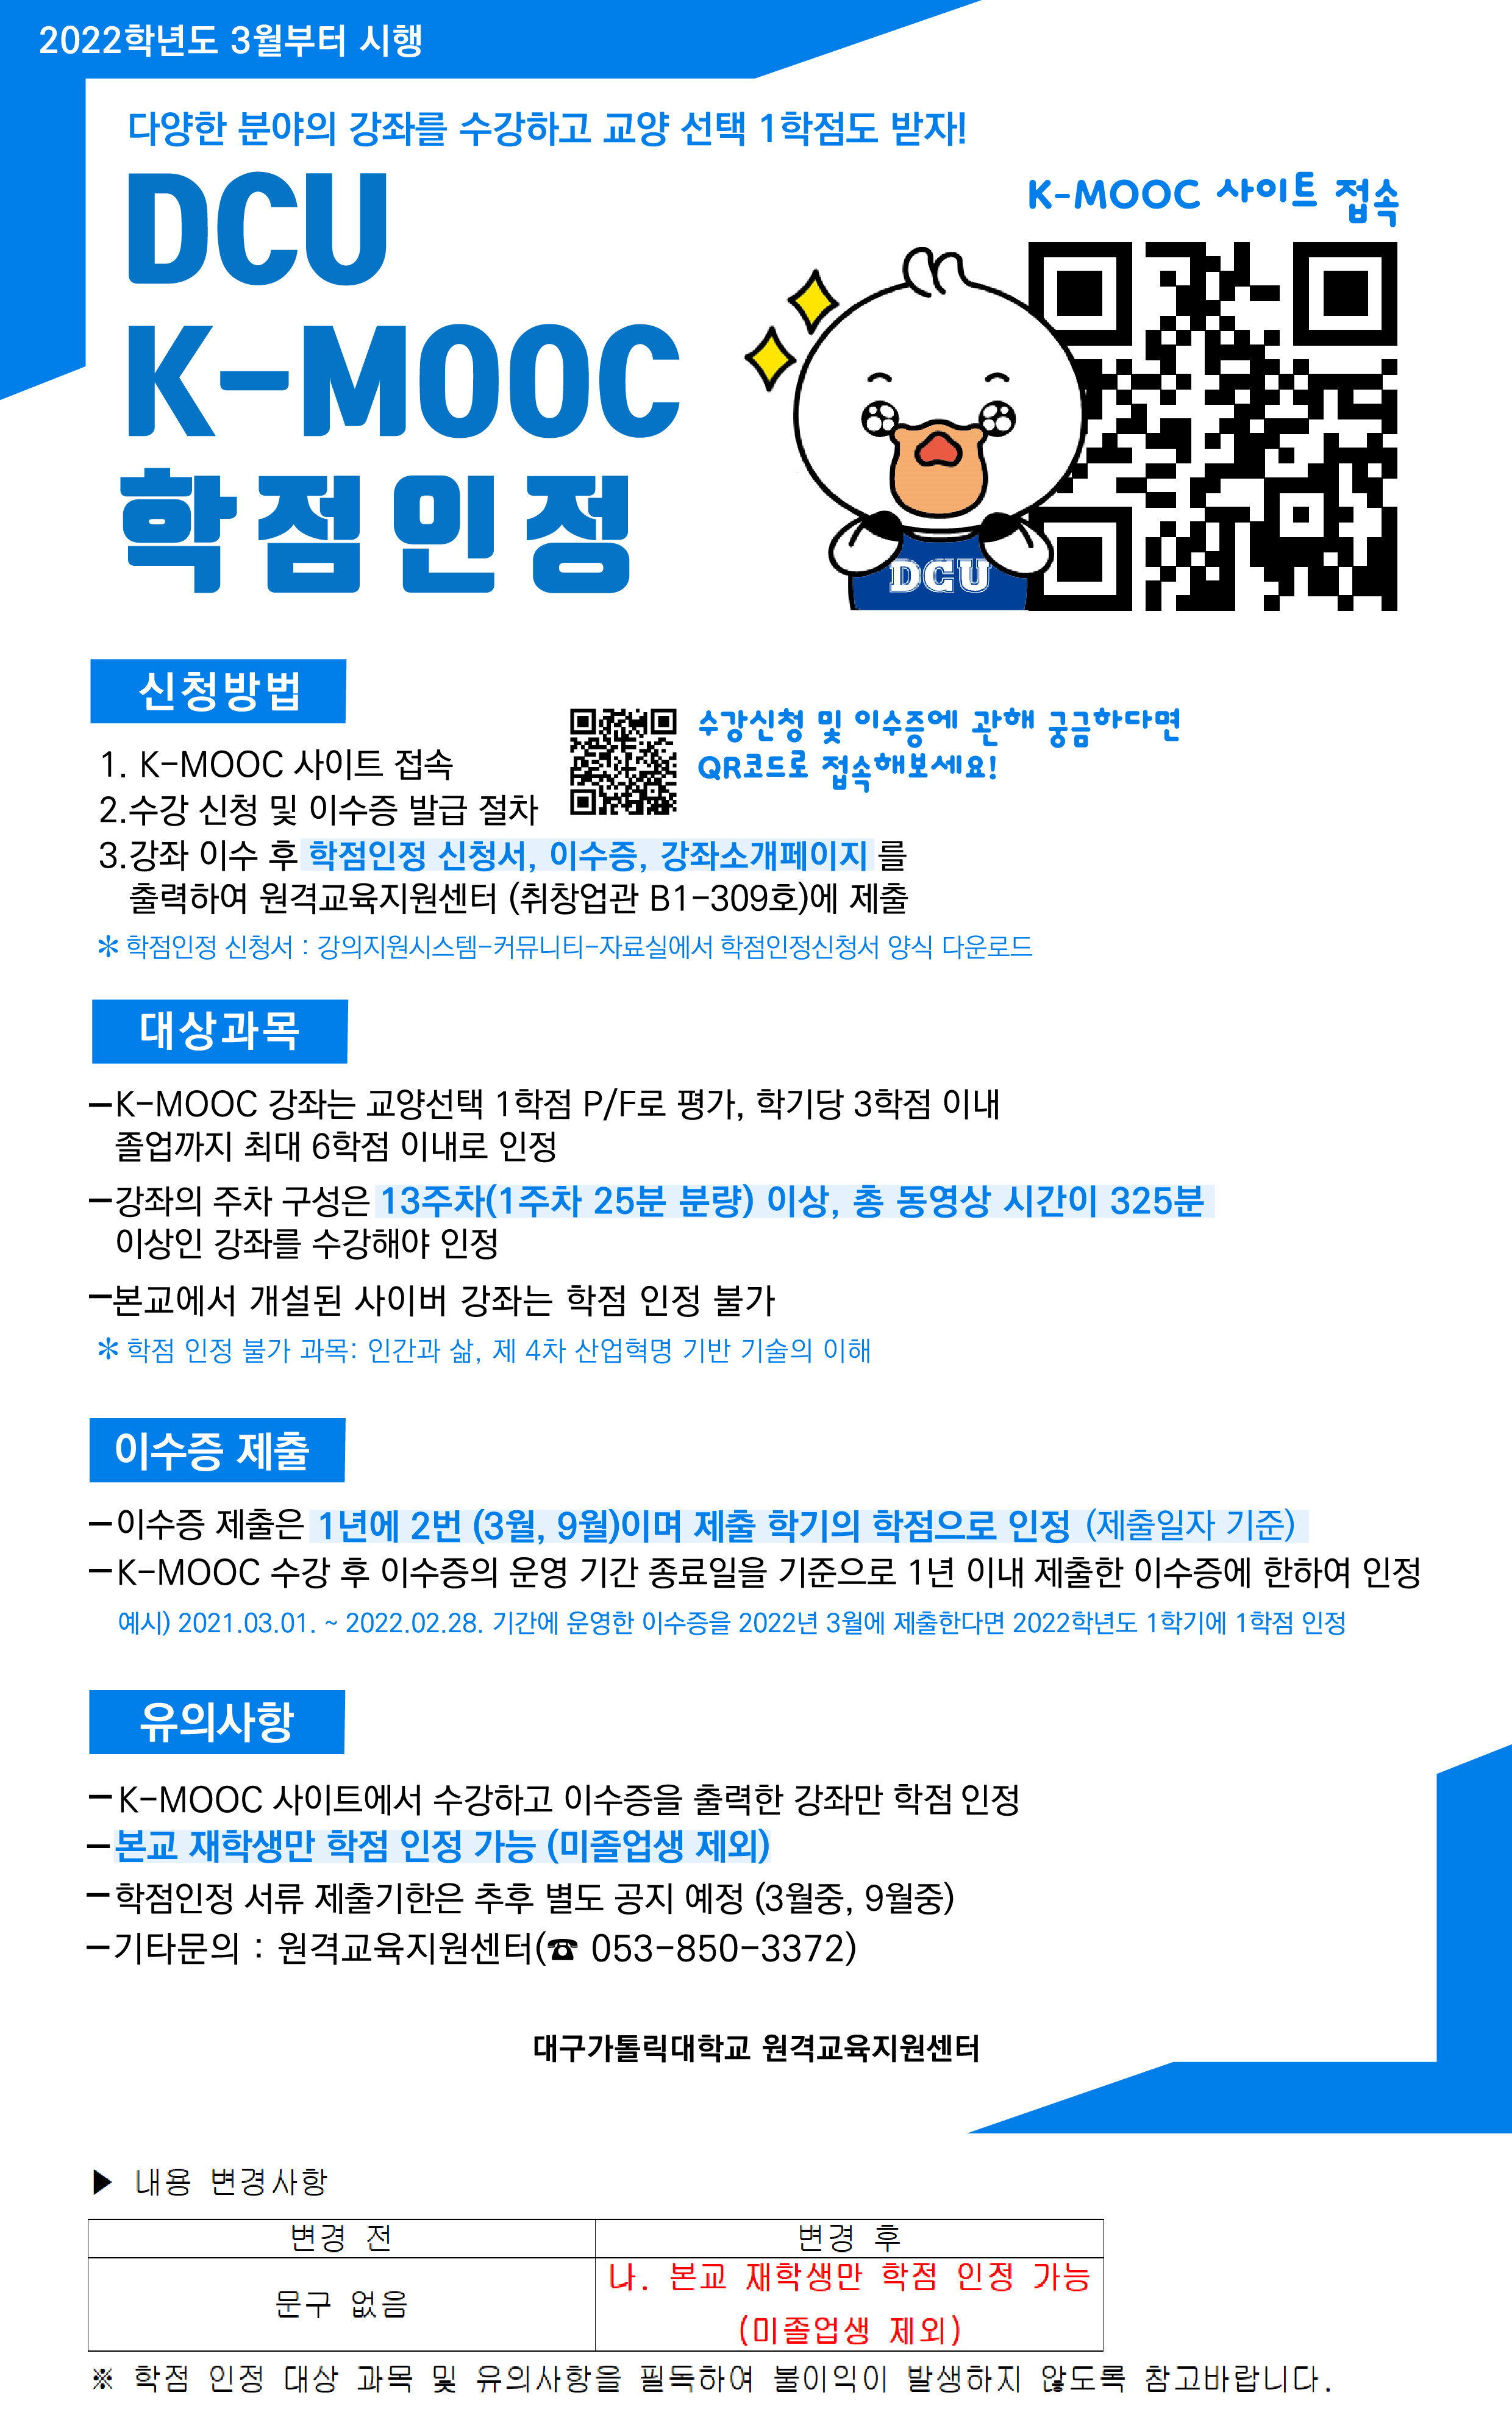 2022학년도 DCU K-MOOC 학점인정 포스터(수정).png